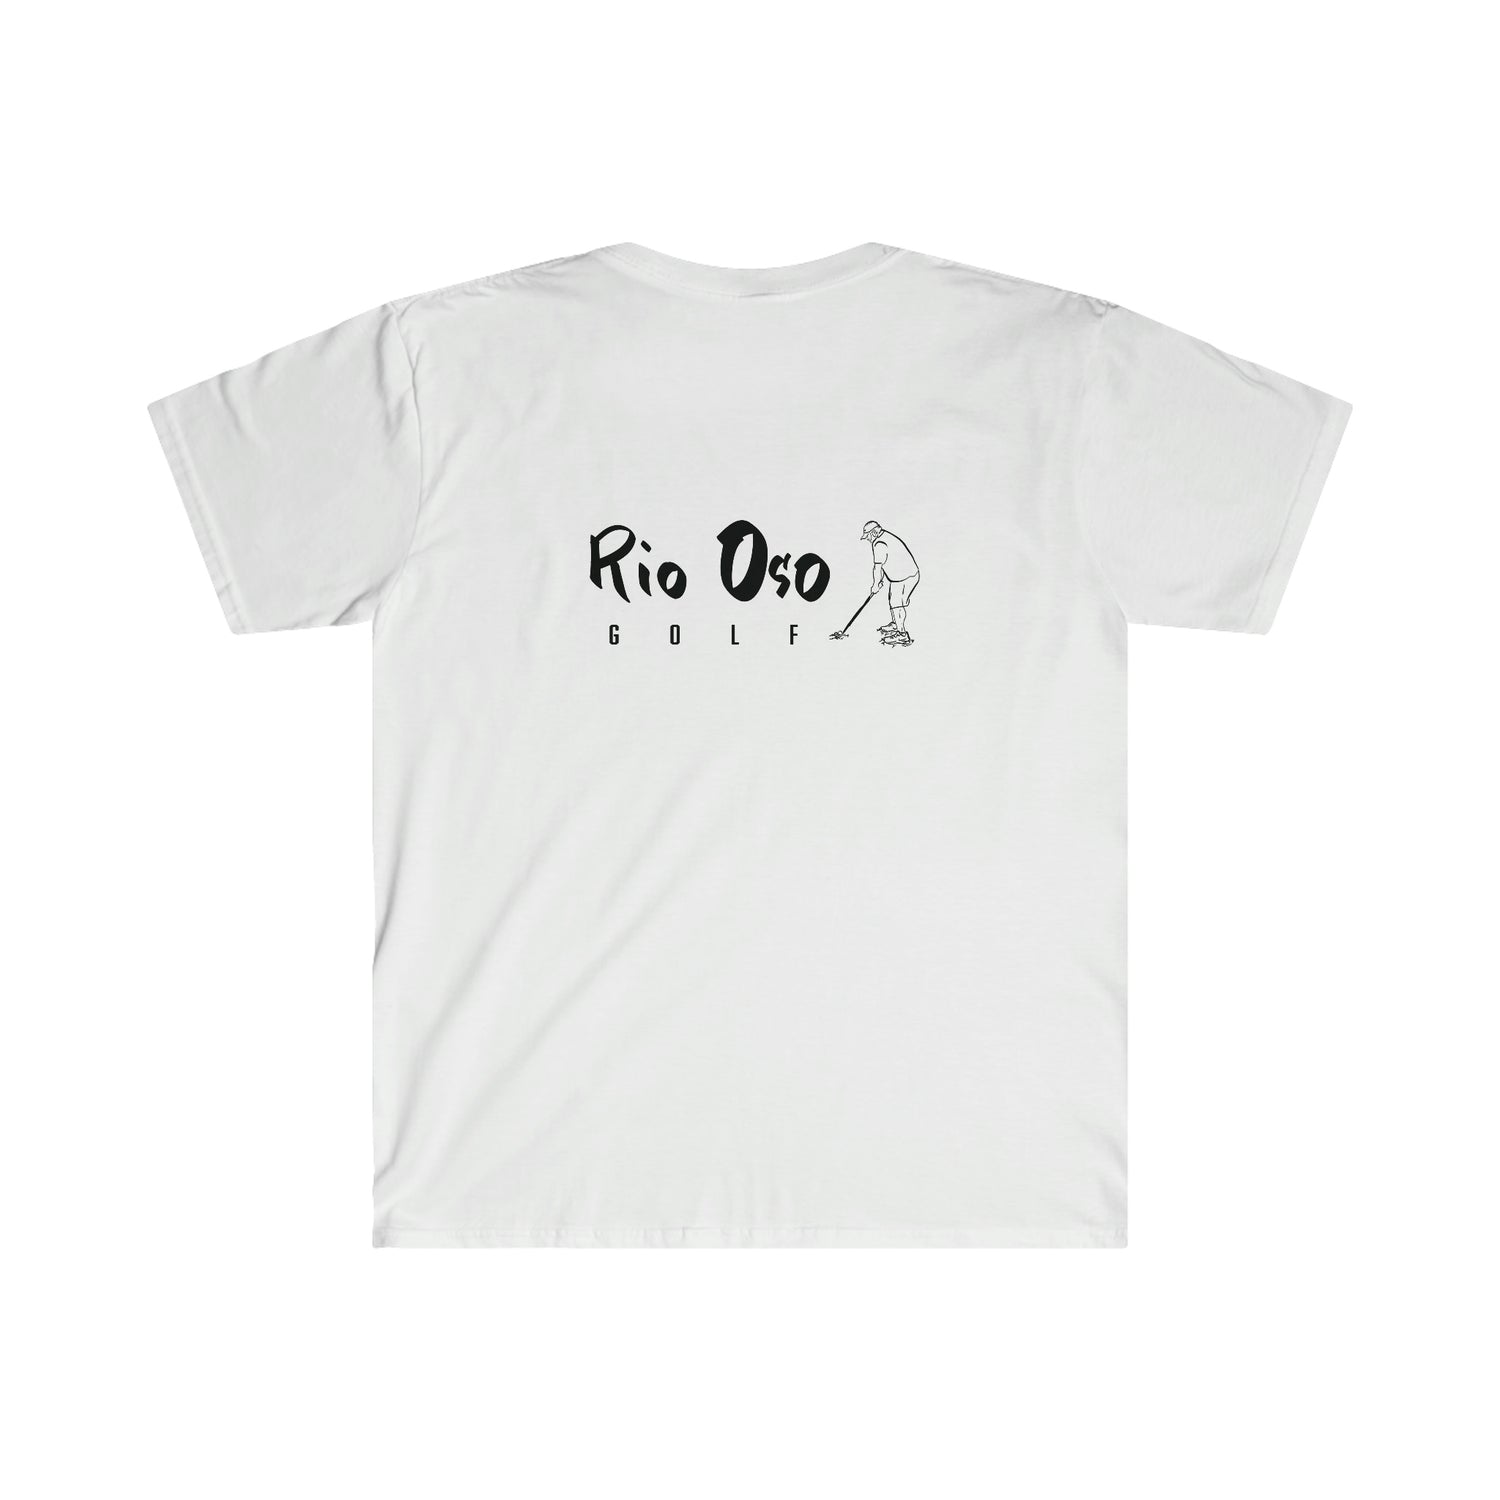 Rio Oso Golf T-Shirt